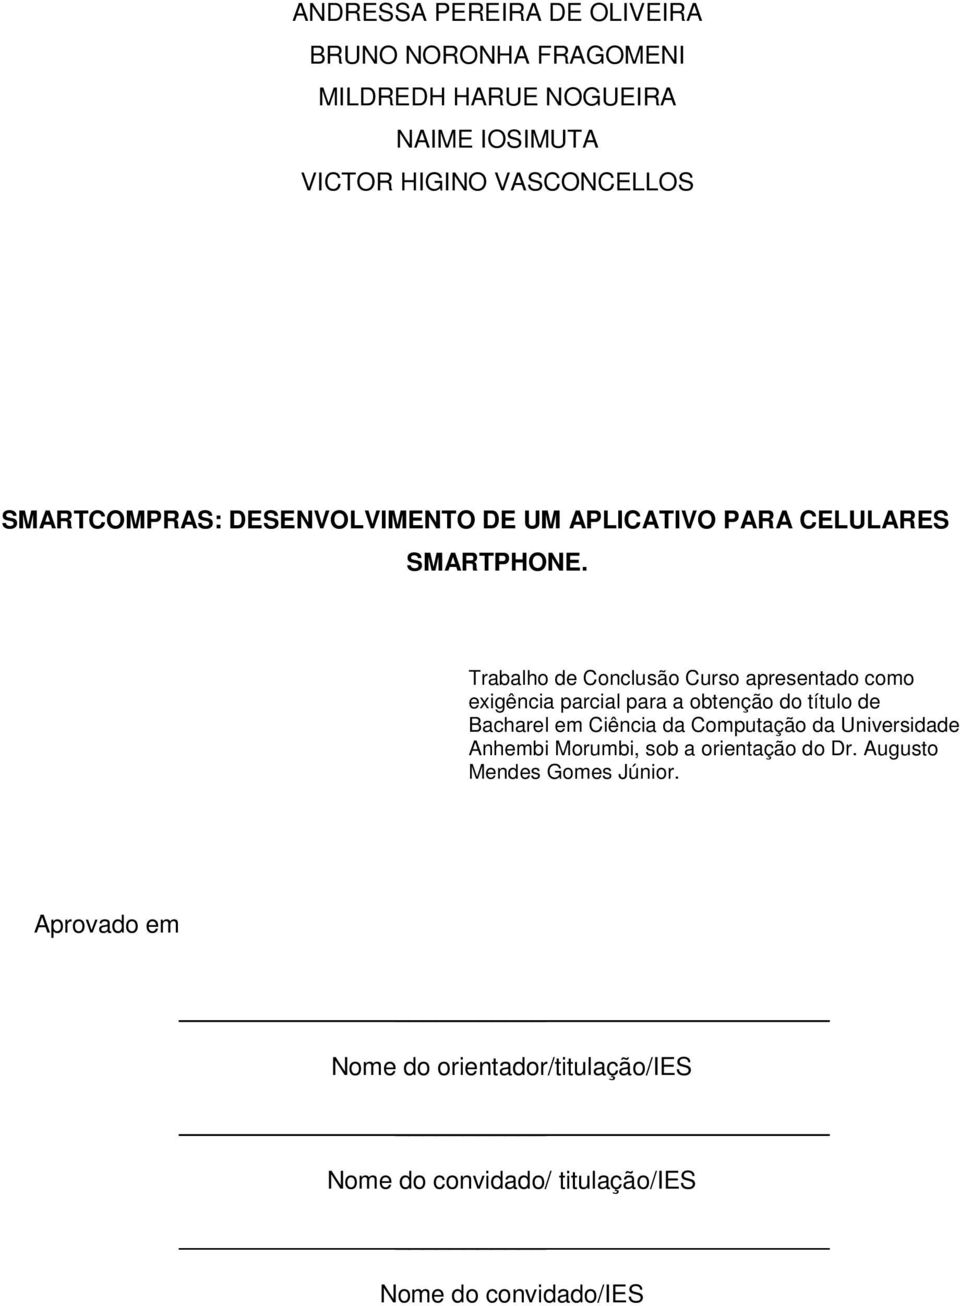 Trabalho de Conclusão Curso apresentado como exigência parcial para a obtenção do título de Bacharel em Ciência da Computação